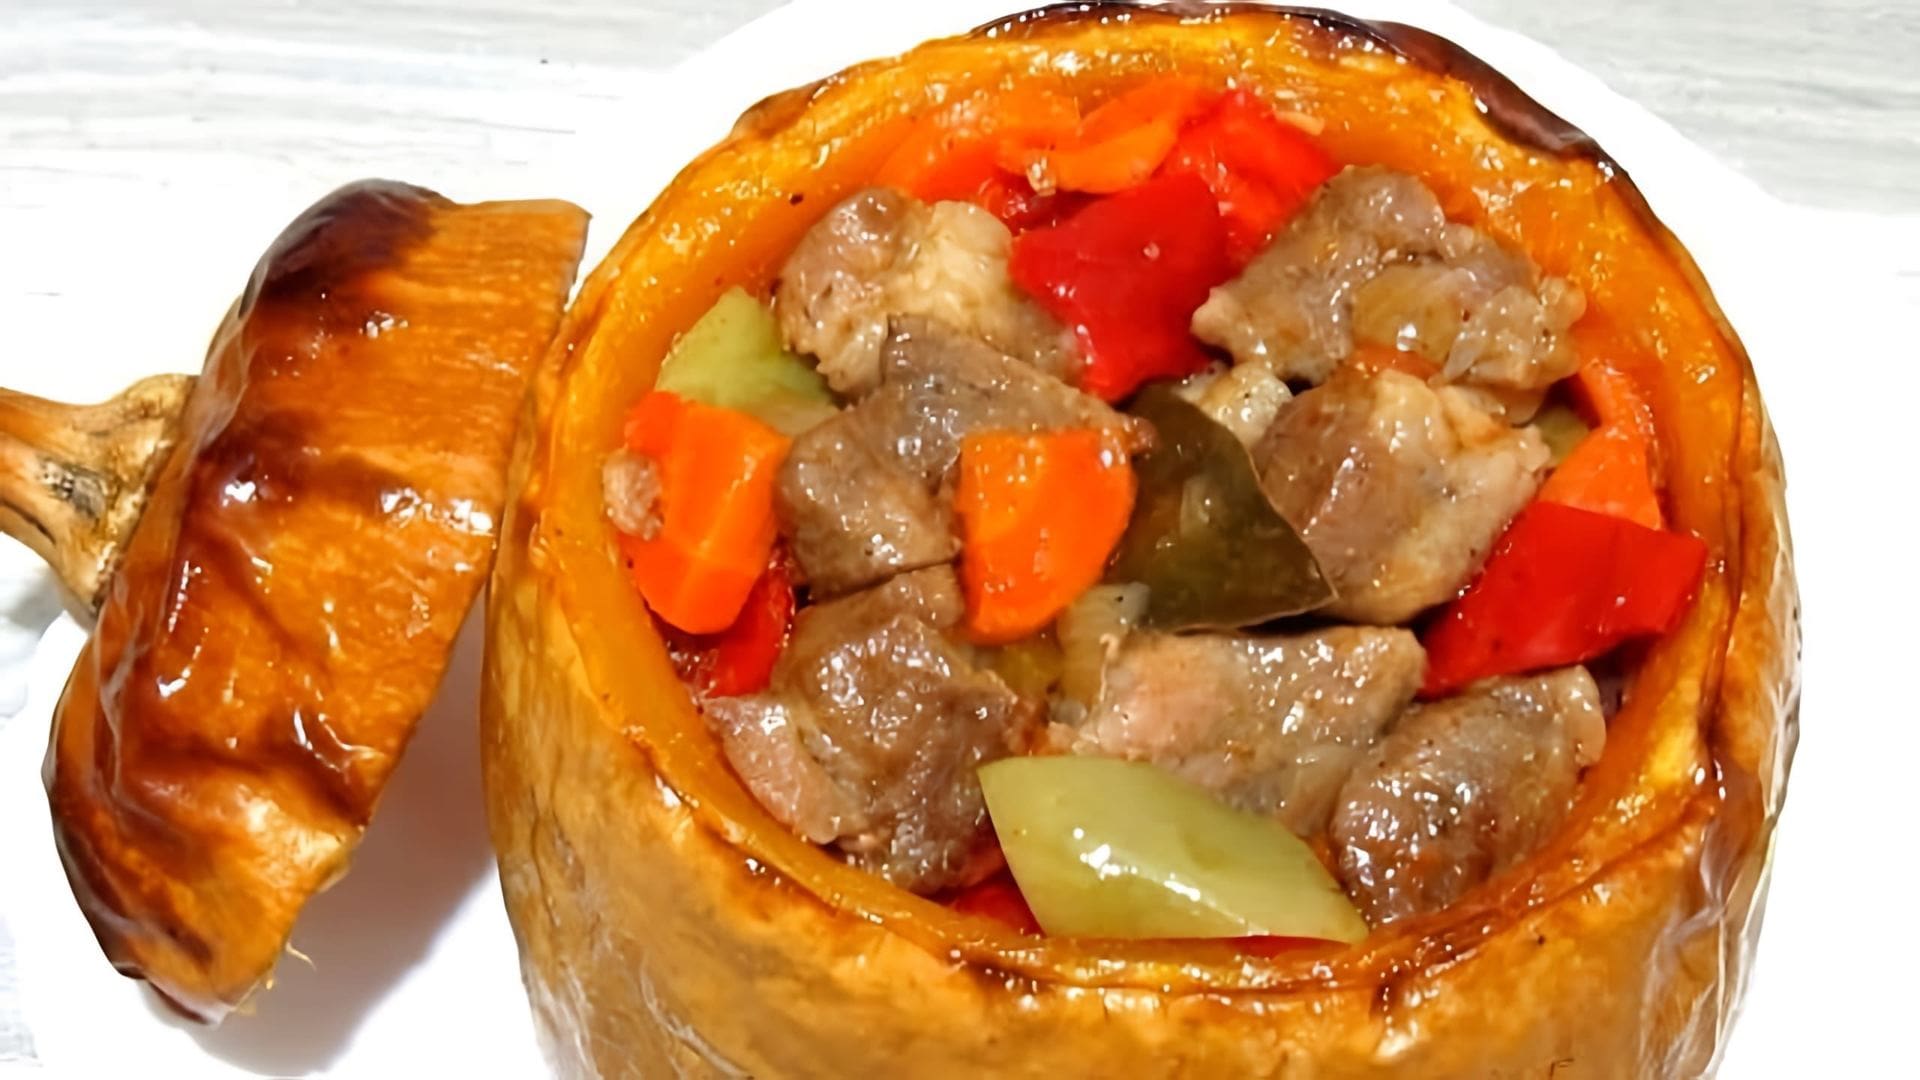 В этом видео демонстрируется процесс приготовления тыквы, фаршированной мясом и овощами